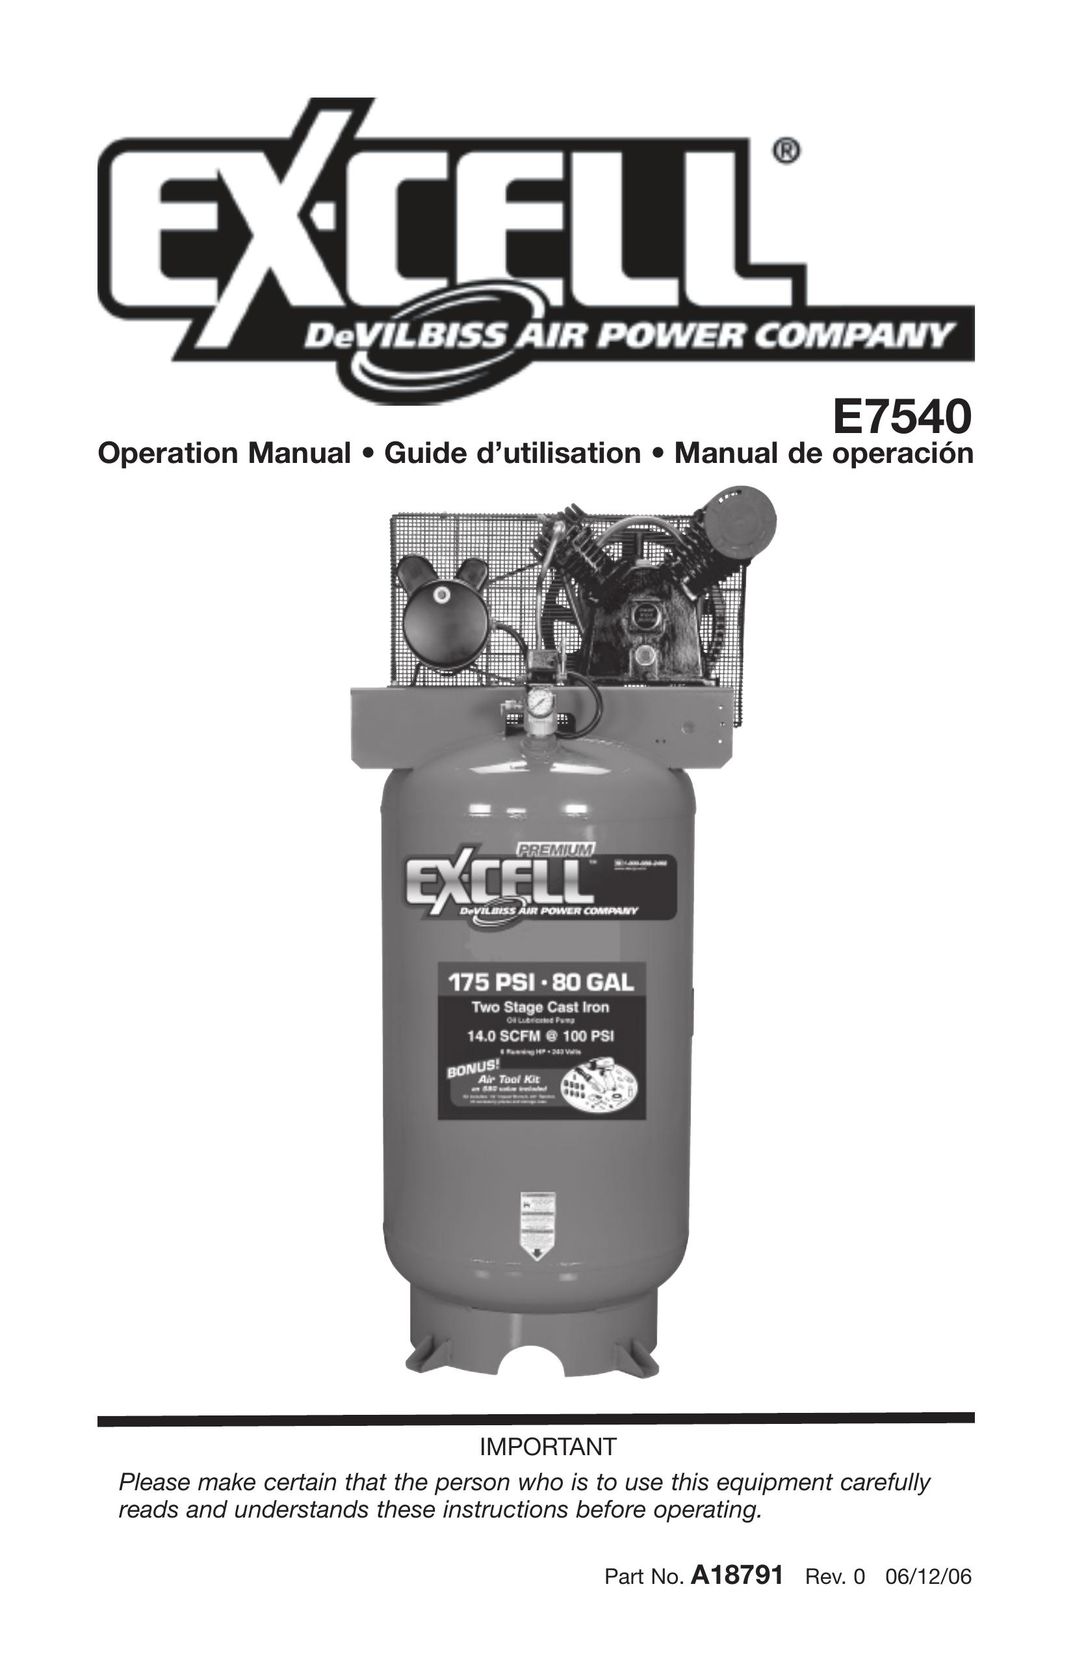 Excell Precision E7540 Air Compressor User Manual